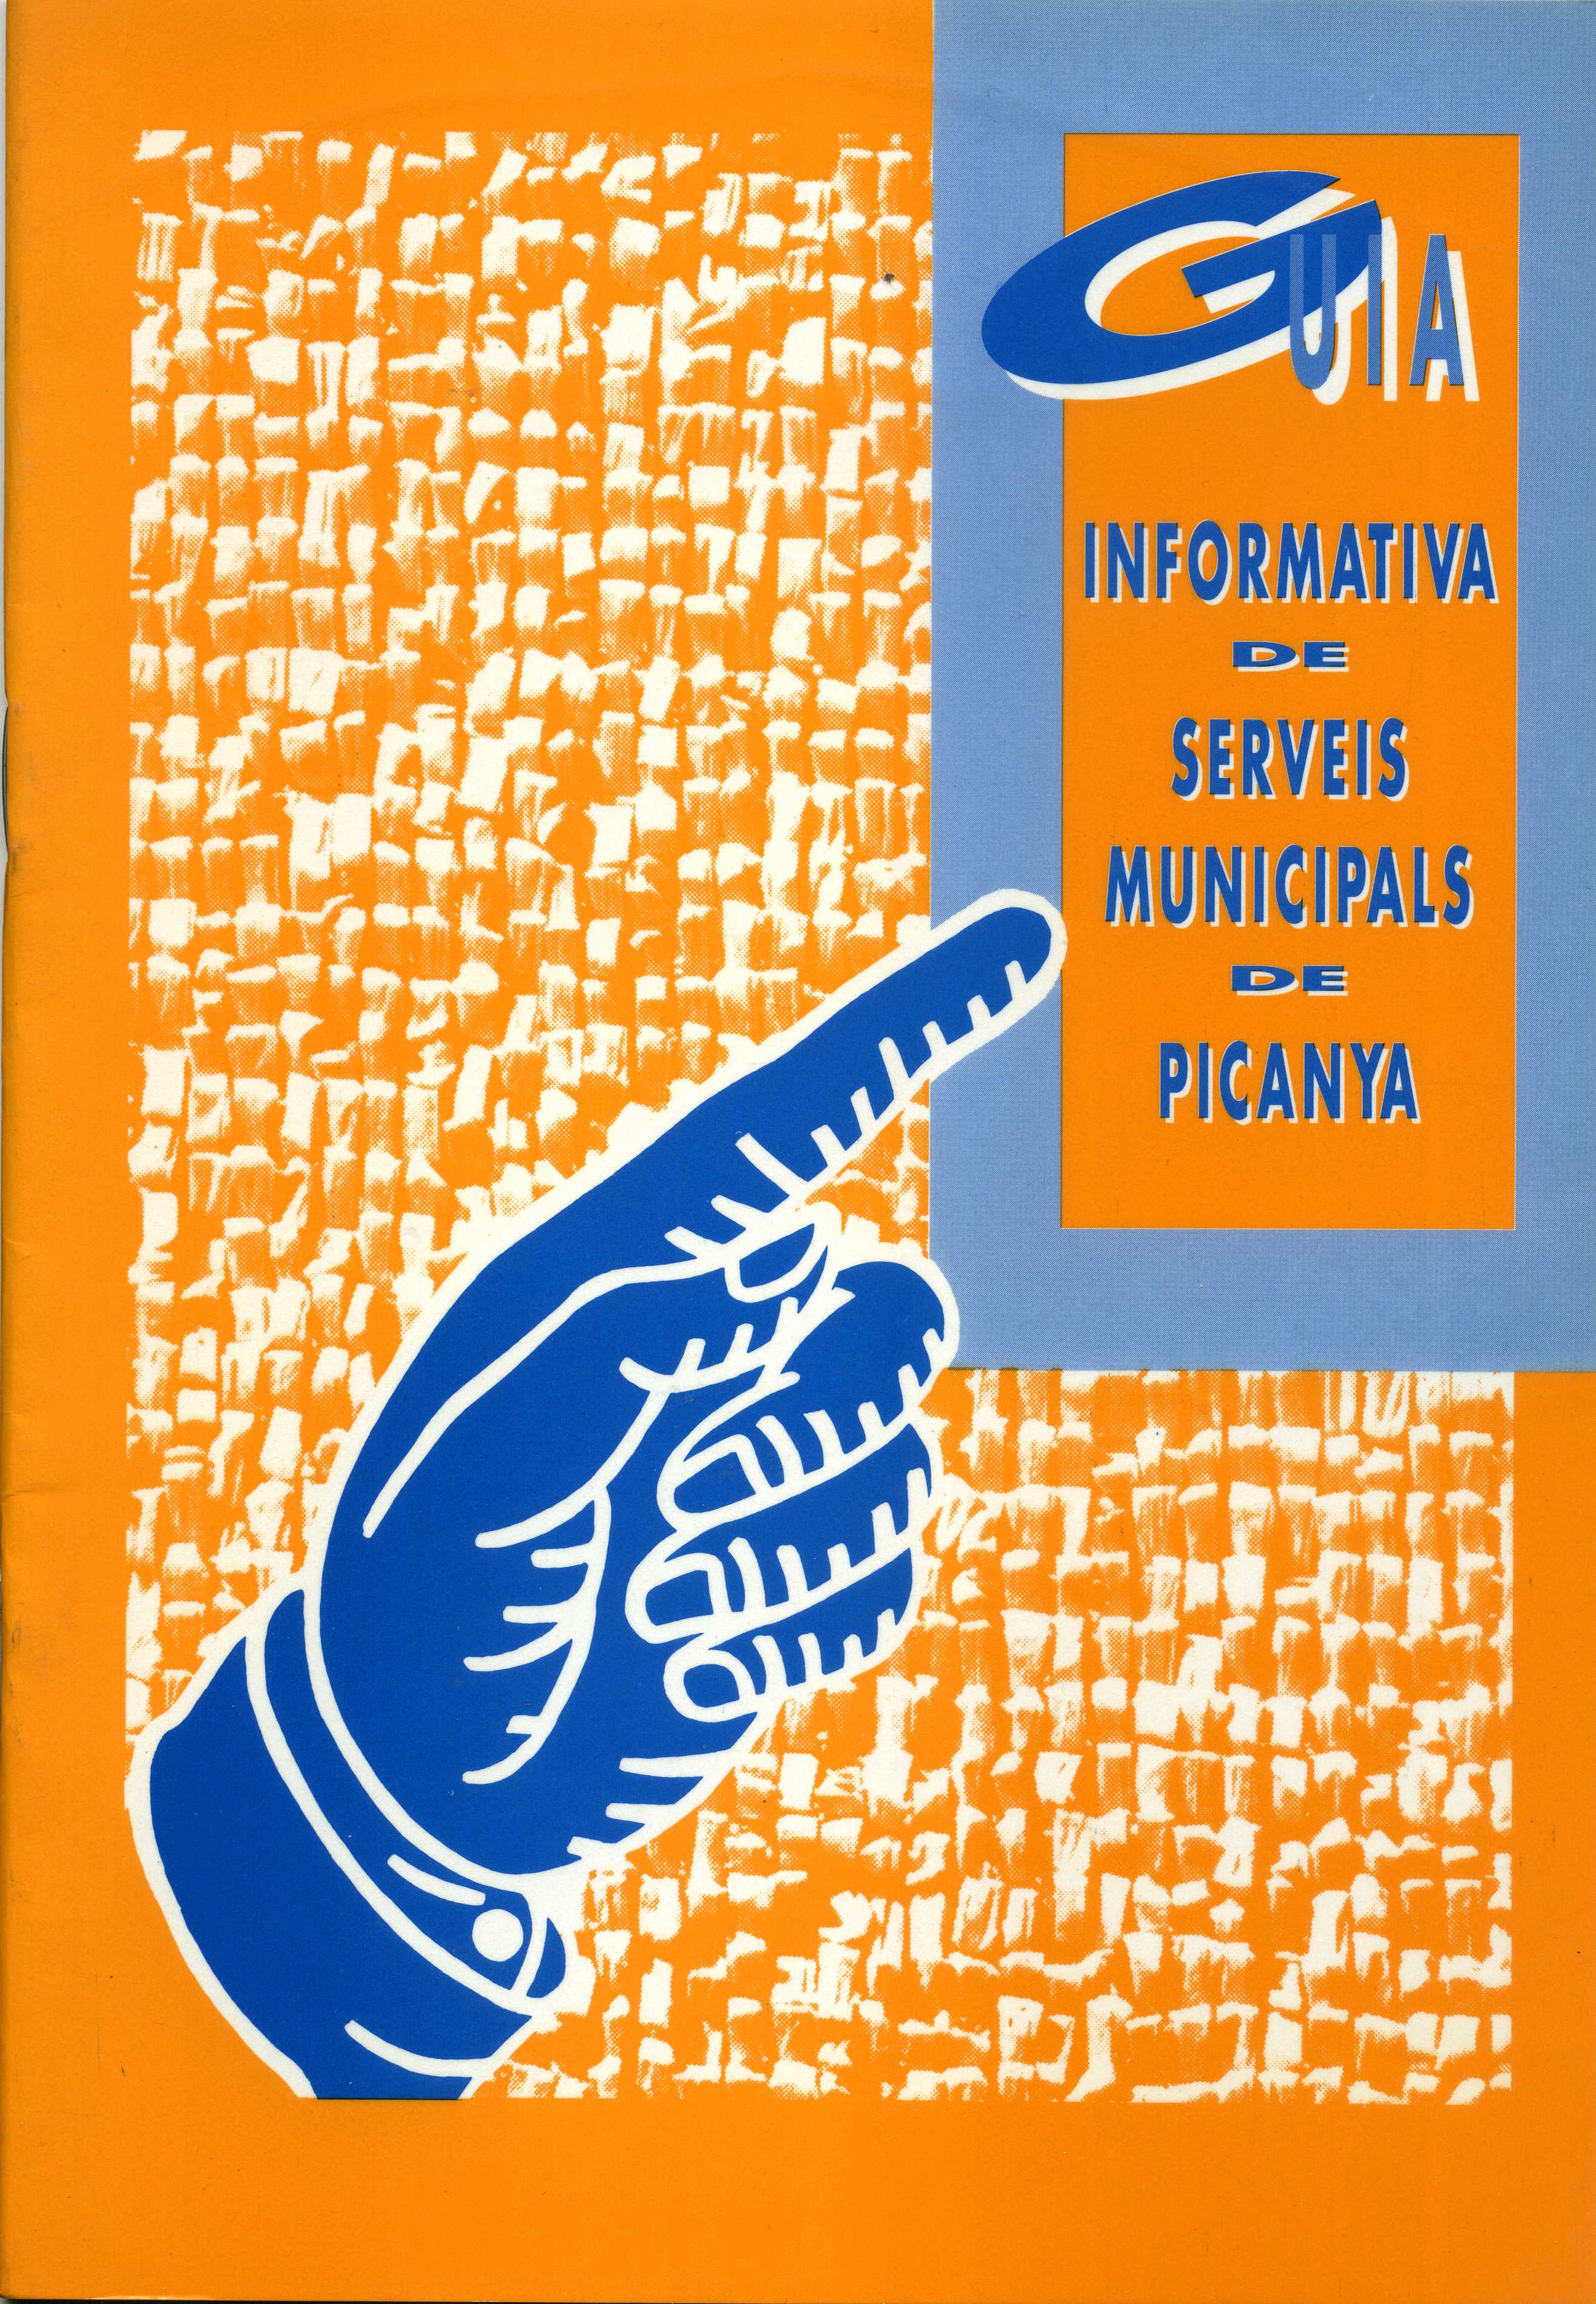 Guia informativa de serveis municipals de Picanya